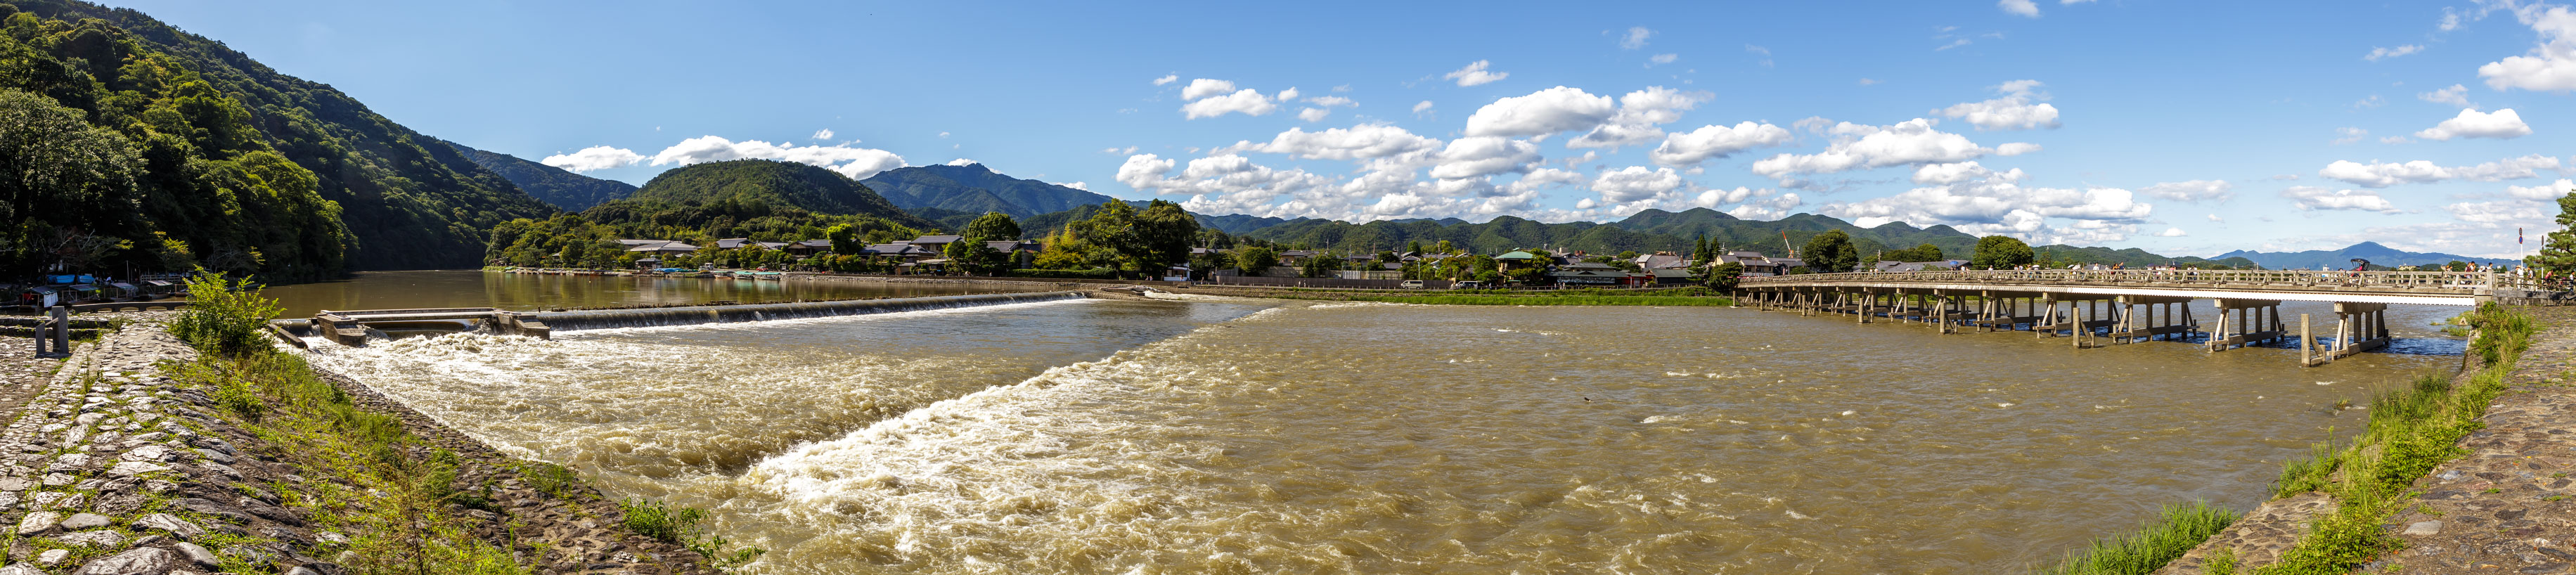 /Guewen/galeries/public/Voyages/Japon/kyoto/Arashiyama/Arashiyama_036.jpg